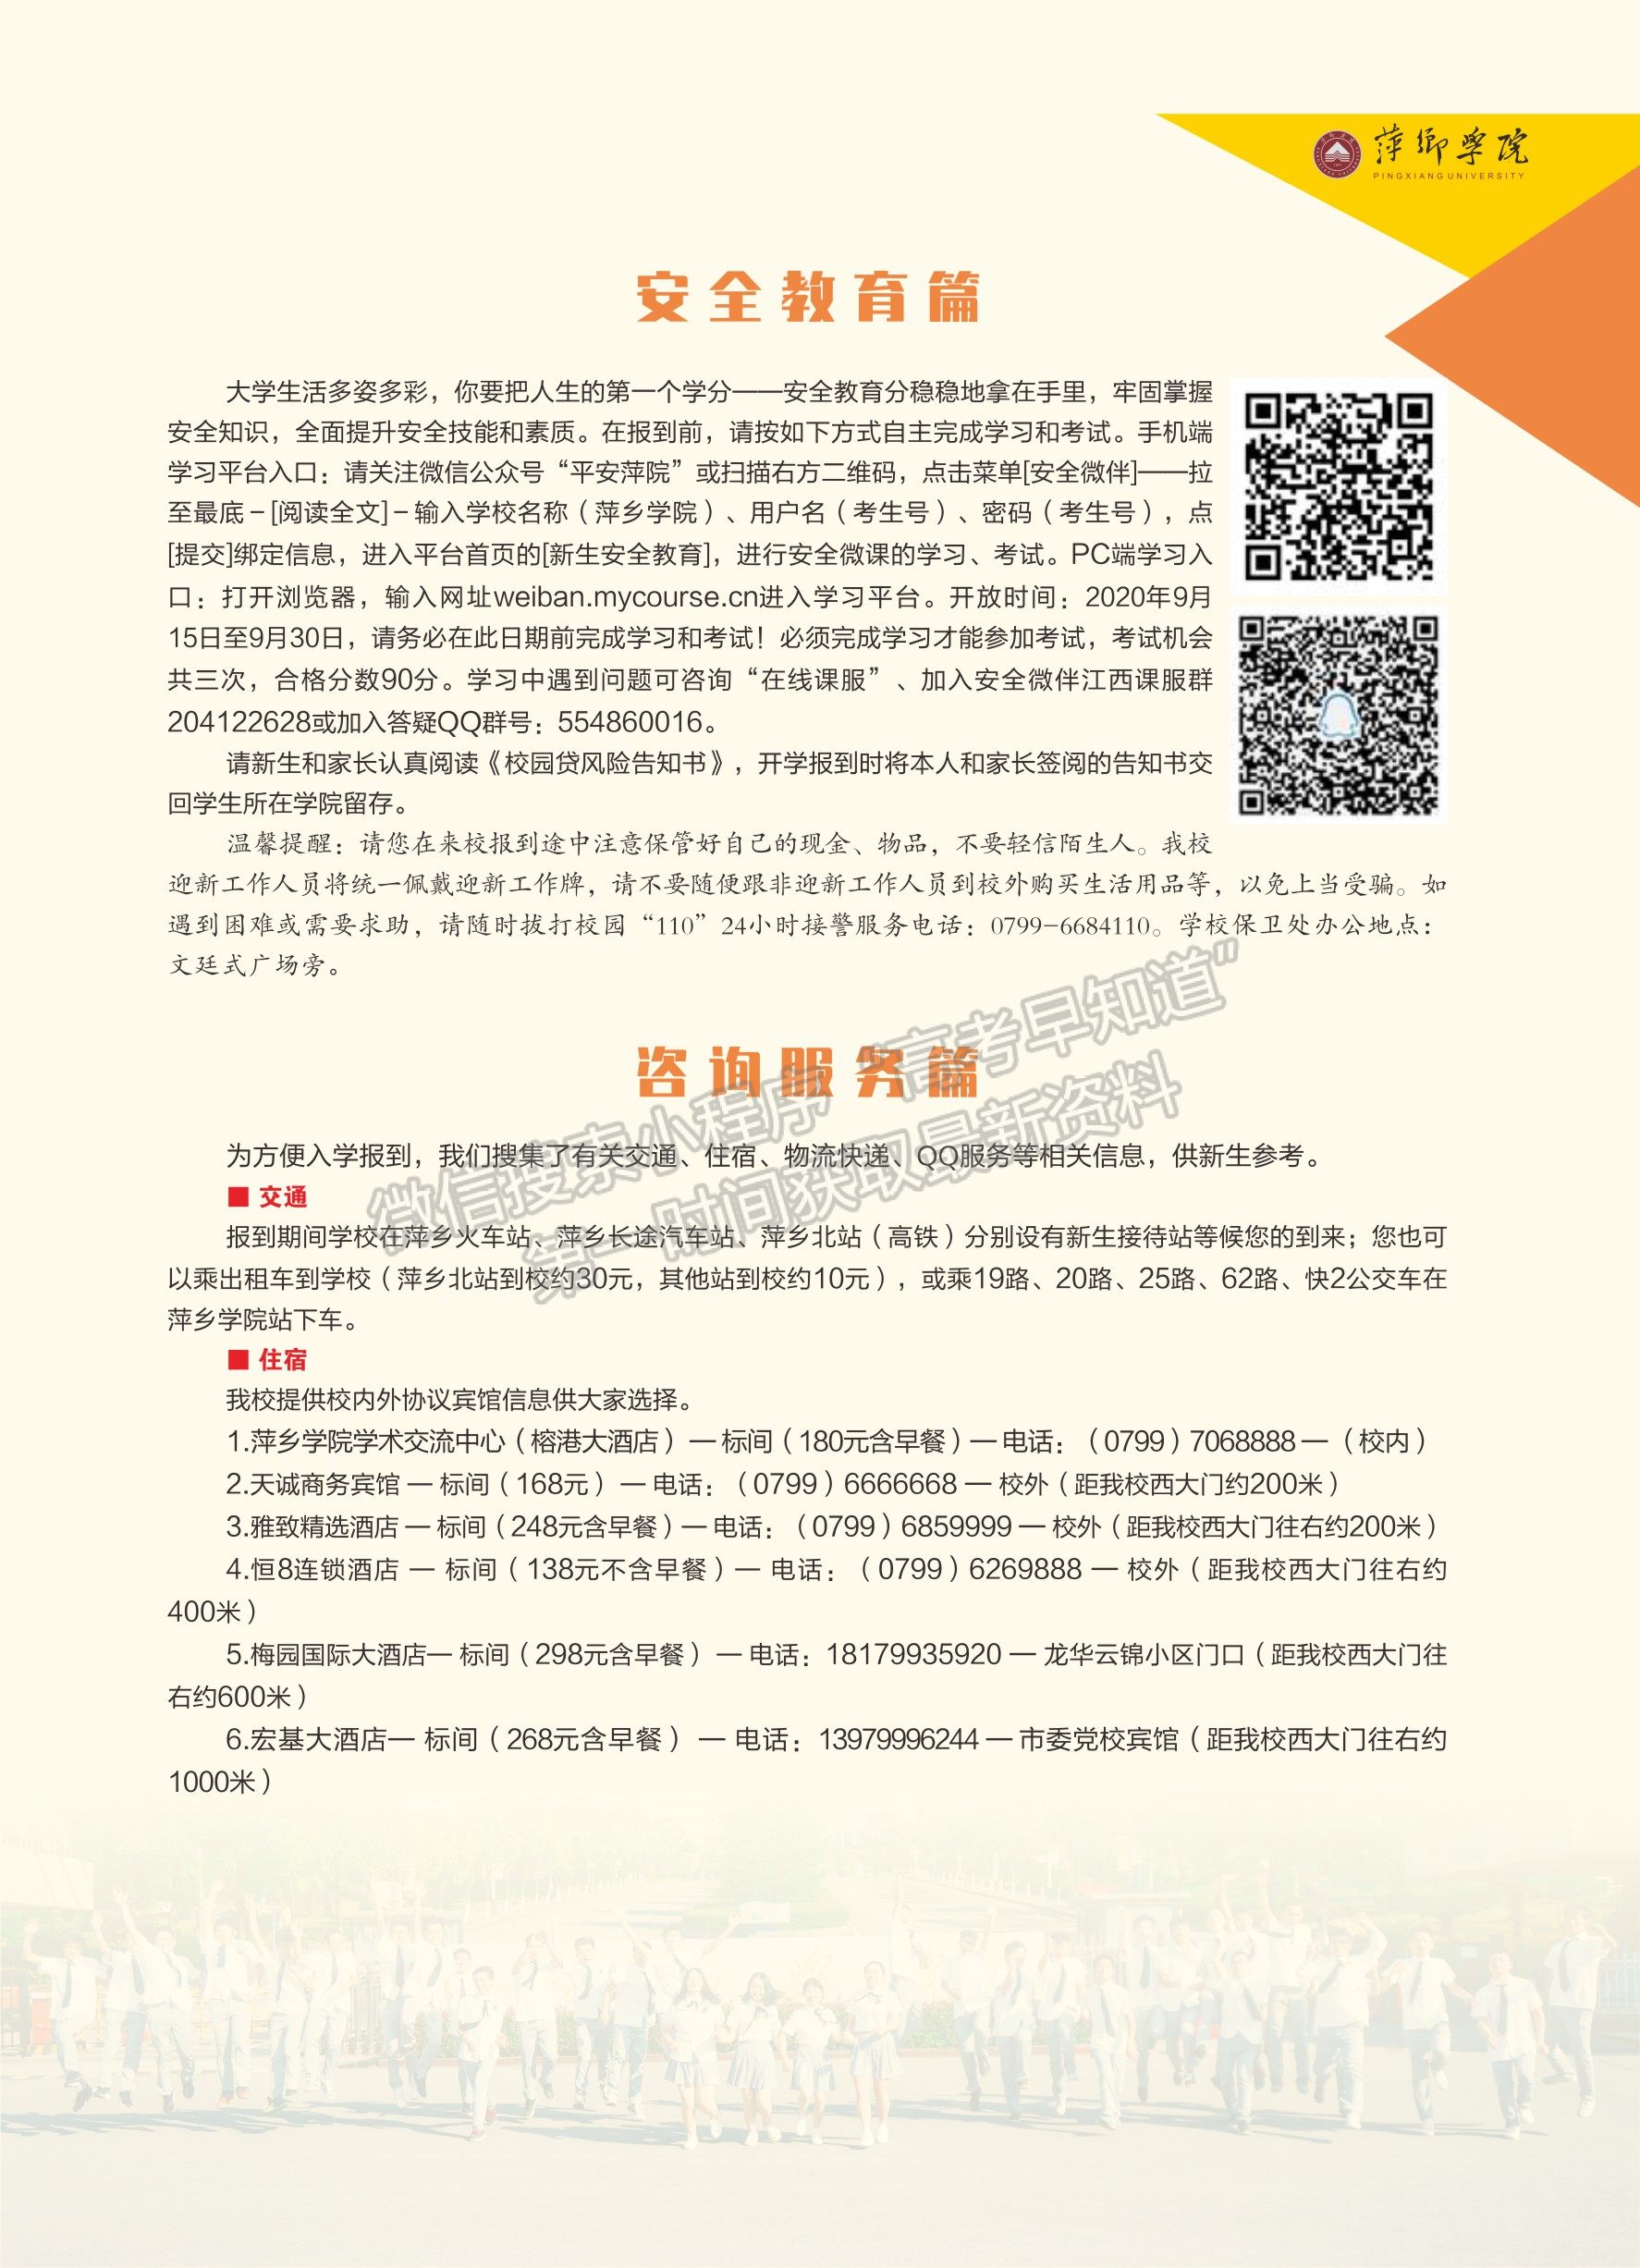 萍乡学院2020年新生入学指南